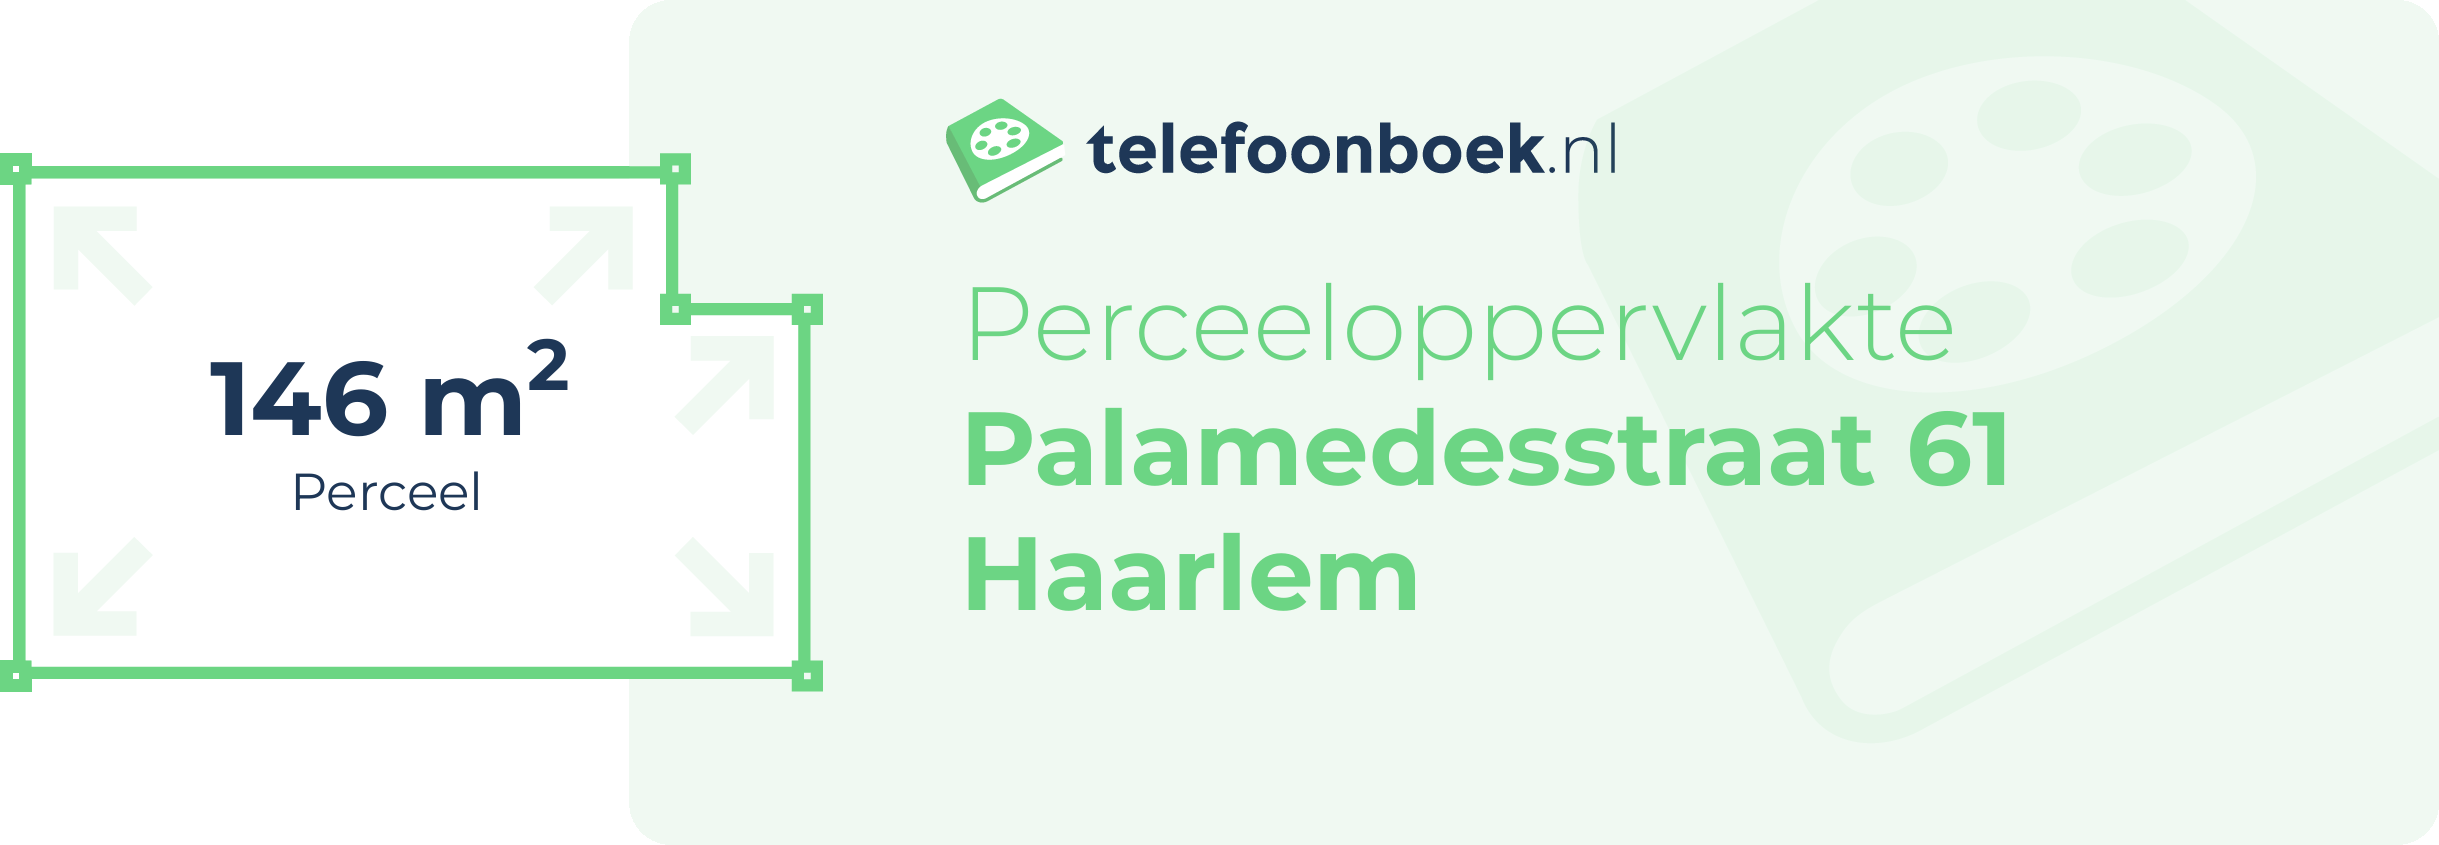 Perceeloppervlakte Palamedesstraat 61 Haarlem